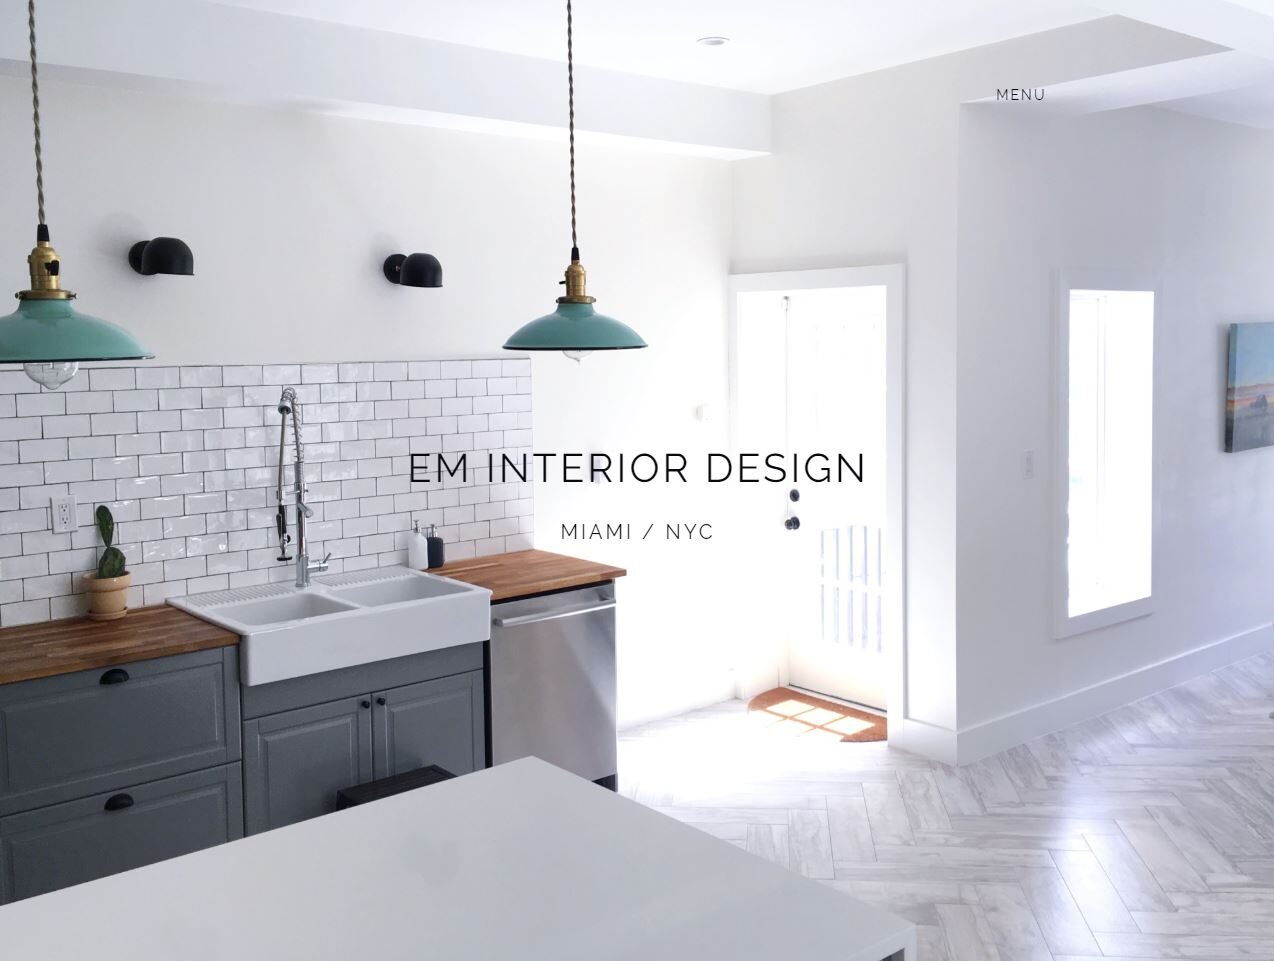 EM Interior Design home page